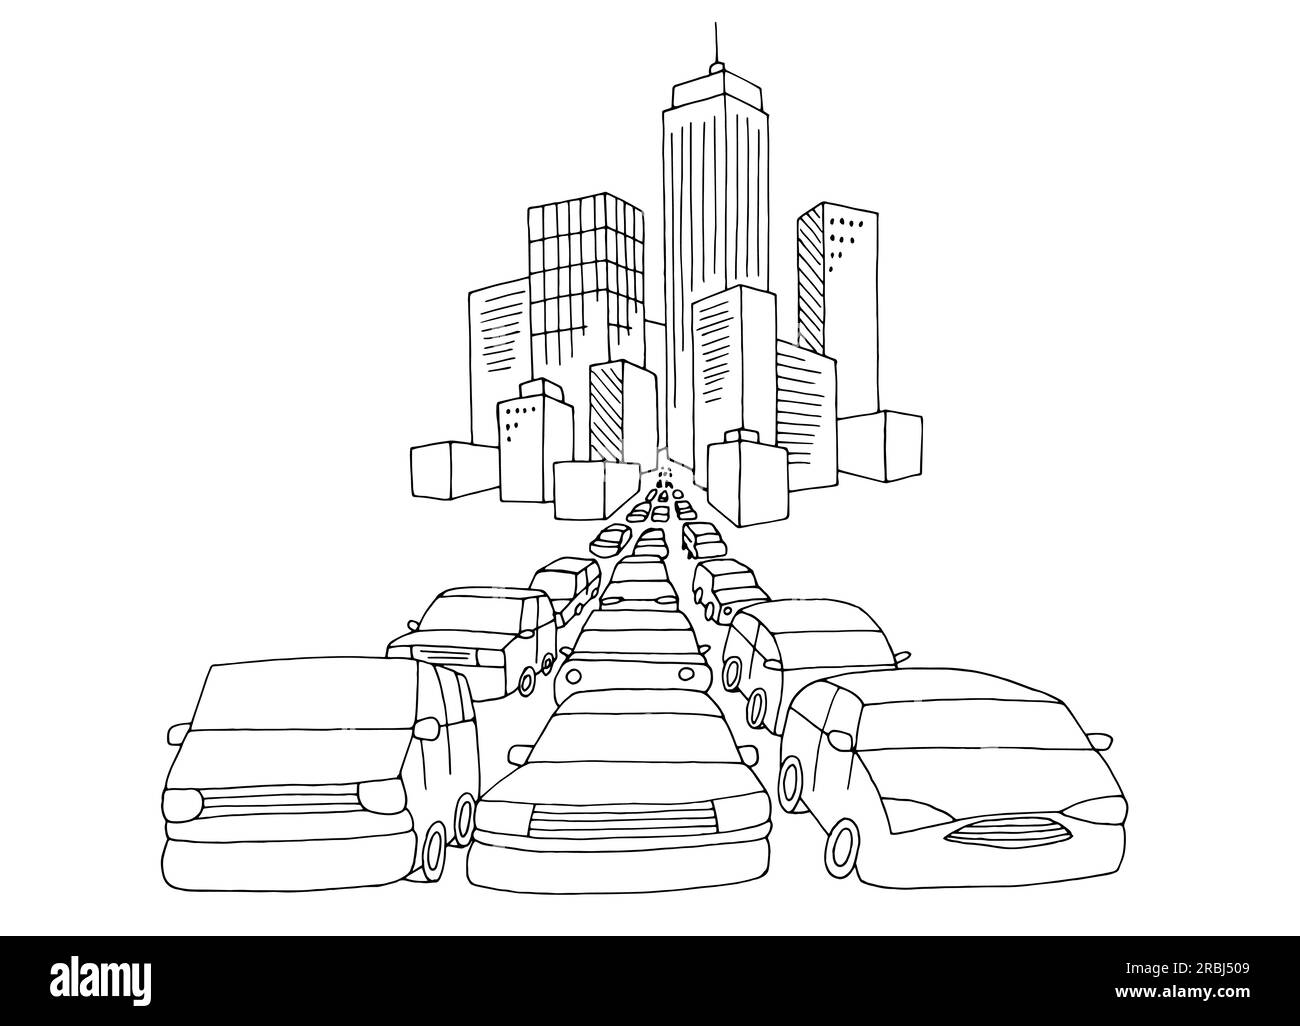 Embouteillage du vecteur d'illustration d'esquisse de paysage noir blanc graphique de la ville Illustration de Vecteur